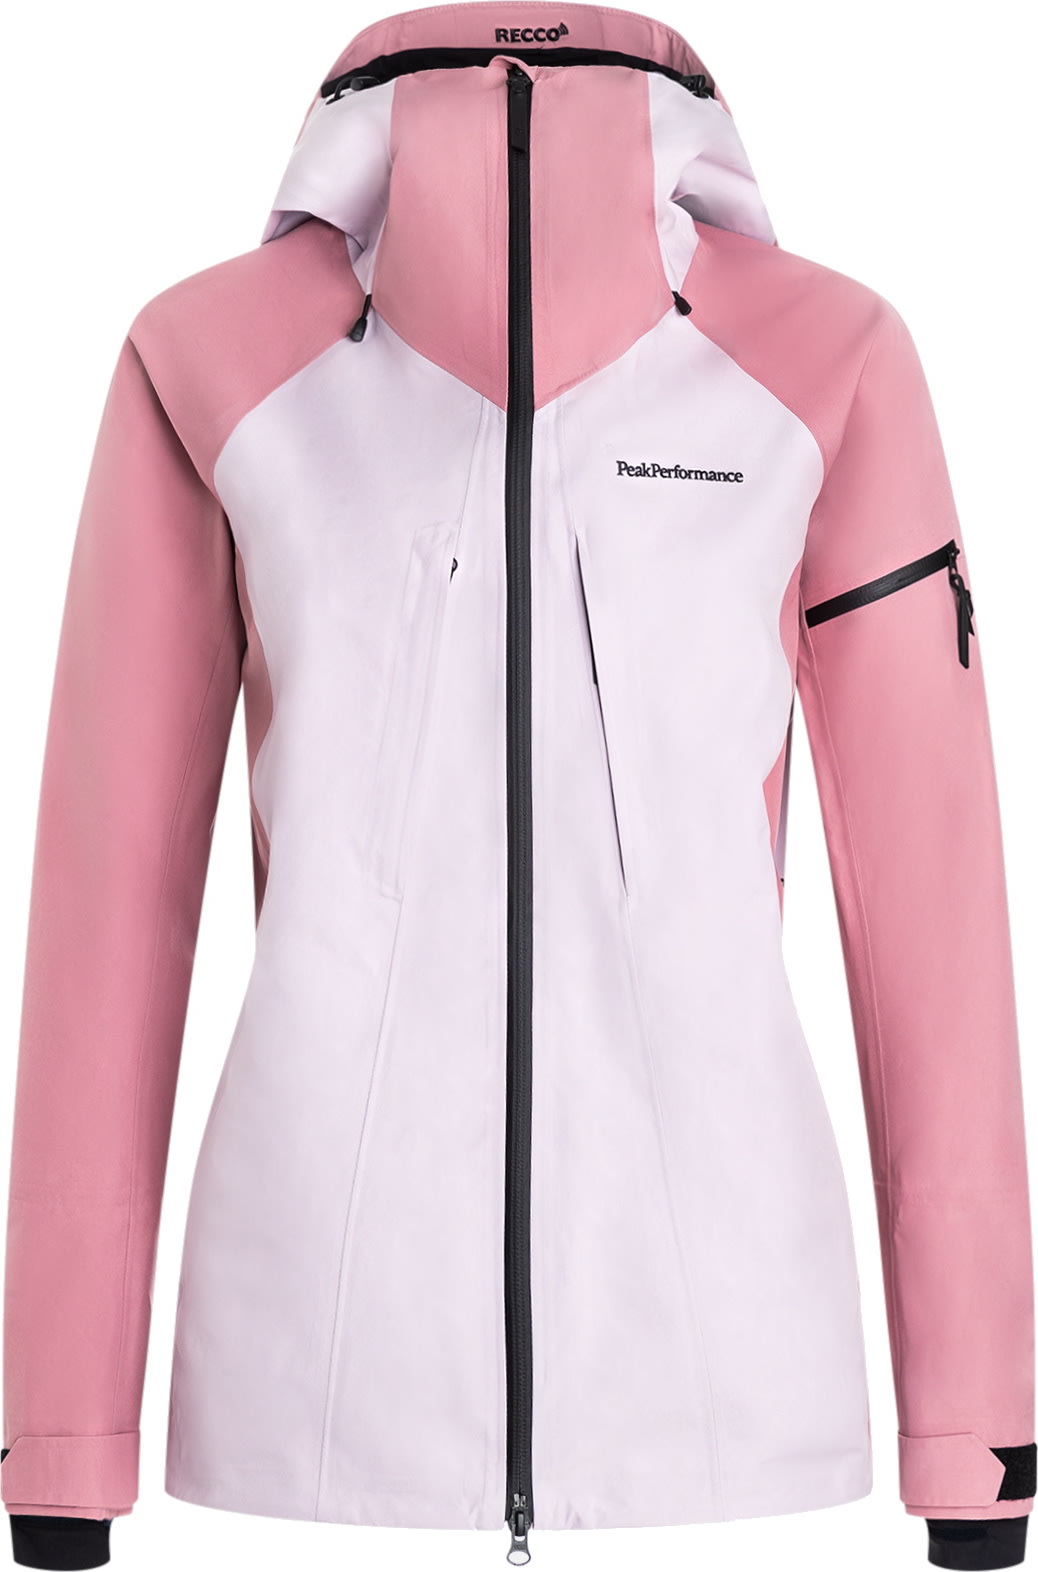 Mundskyl Dekan køber Køb Peak Performance Women's 3 layer Gore-Tex Ski Jacket fra Outnorth